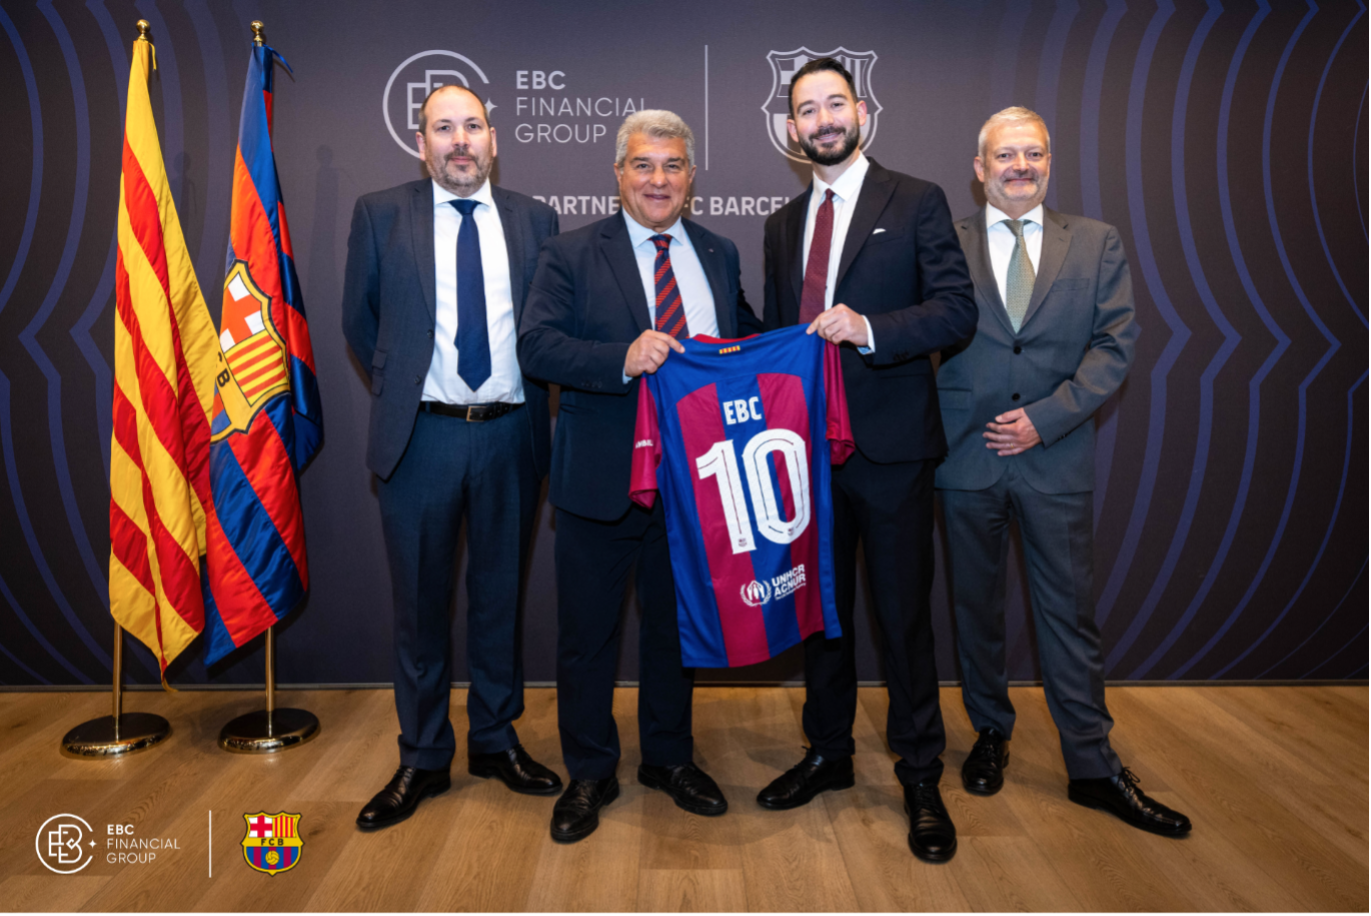 הברית האסטרטגית חתומה: EBC Financial Group מאחדת כוחות עם מועדון הכדורגל ברצלונה